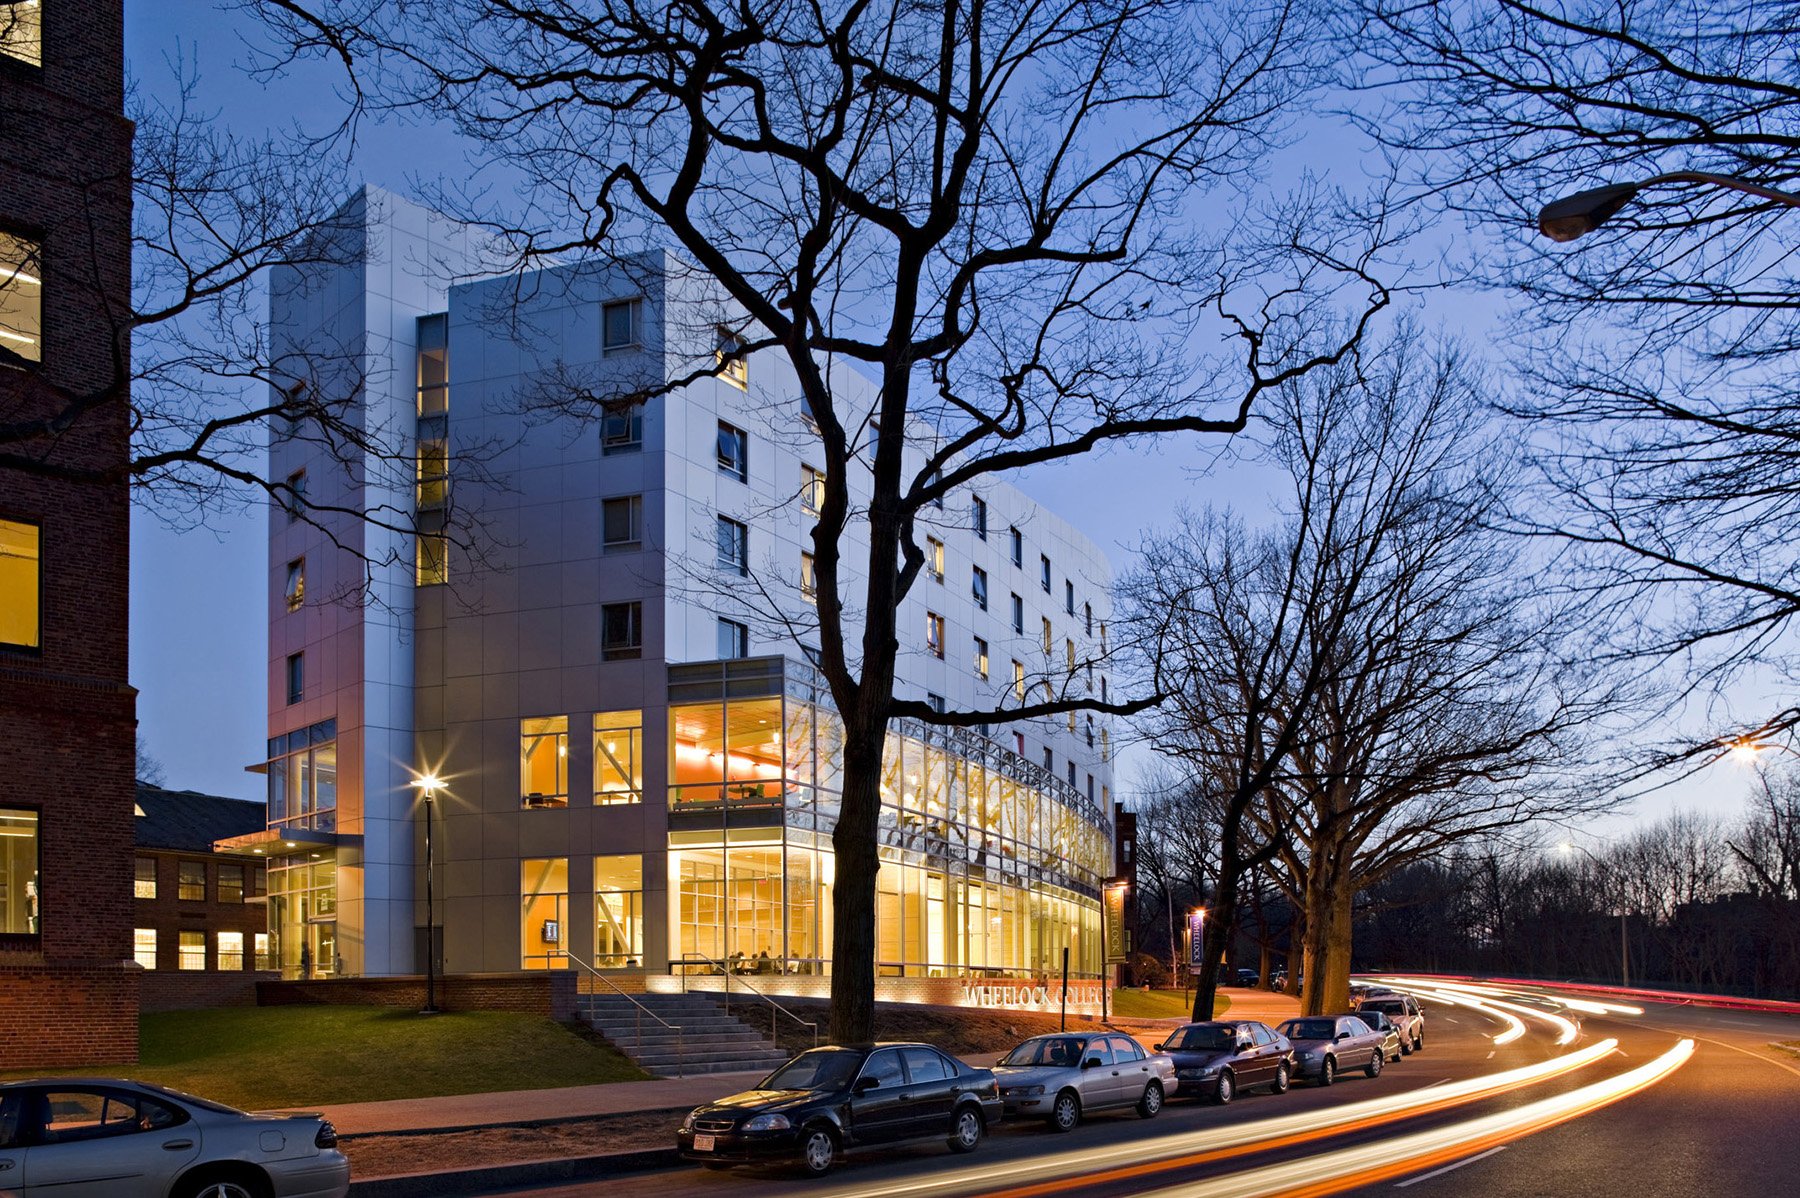 Wheelock College / Campus Center & Student Residencies - William Rawn Associates